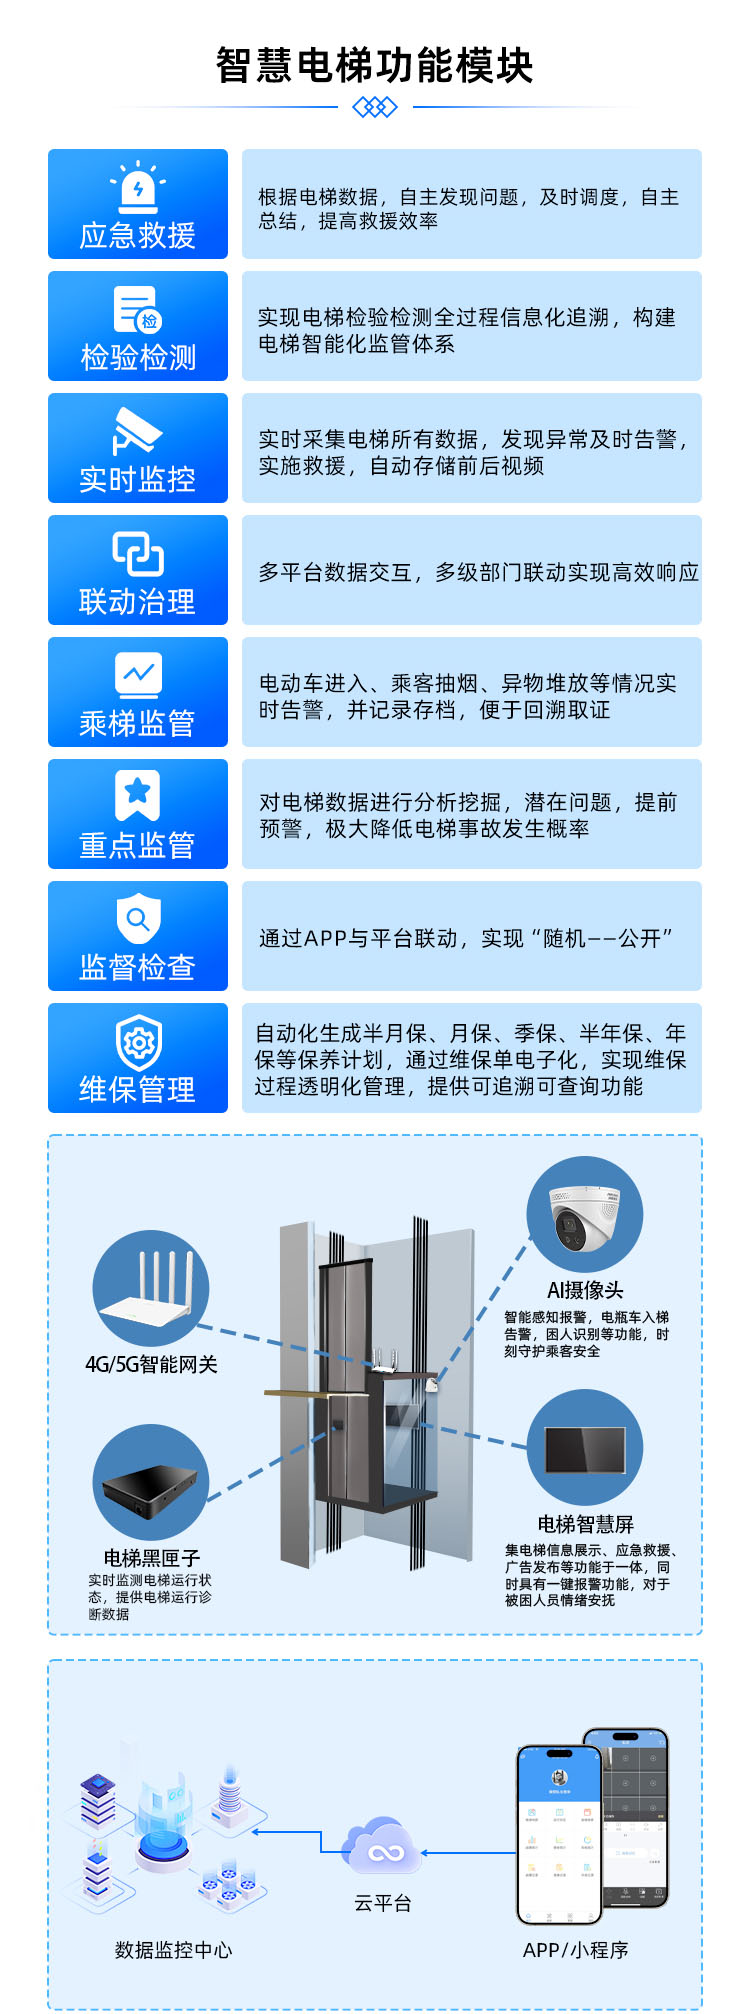 宝蓝智慧电梯物联网设备，电梯运行数据监管平台